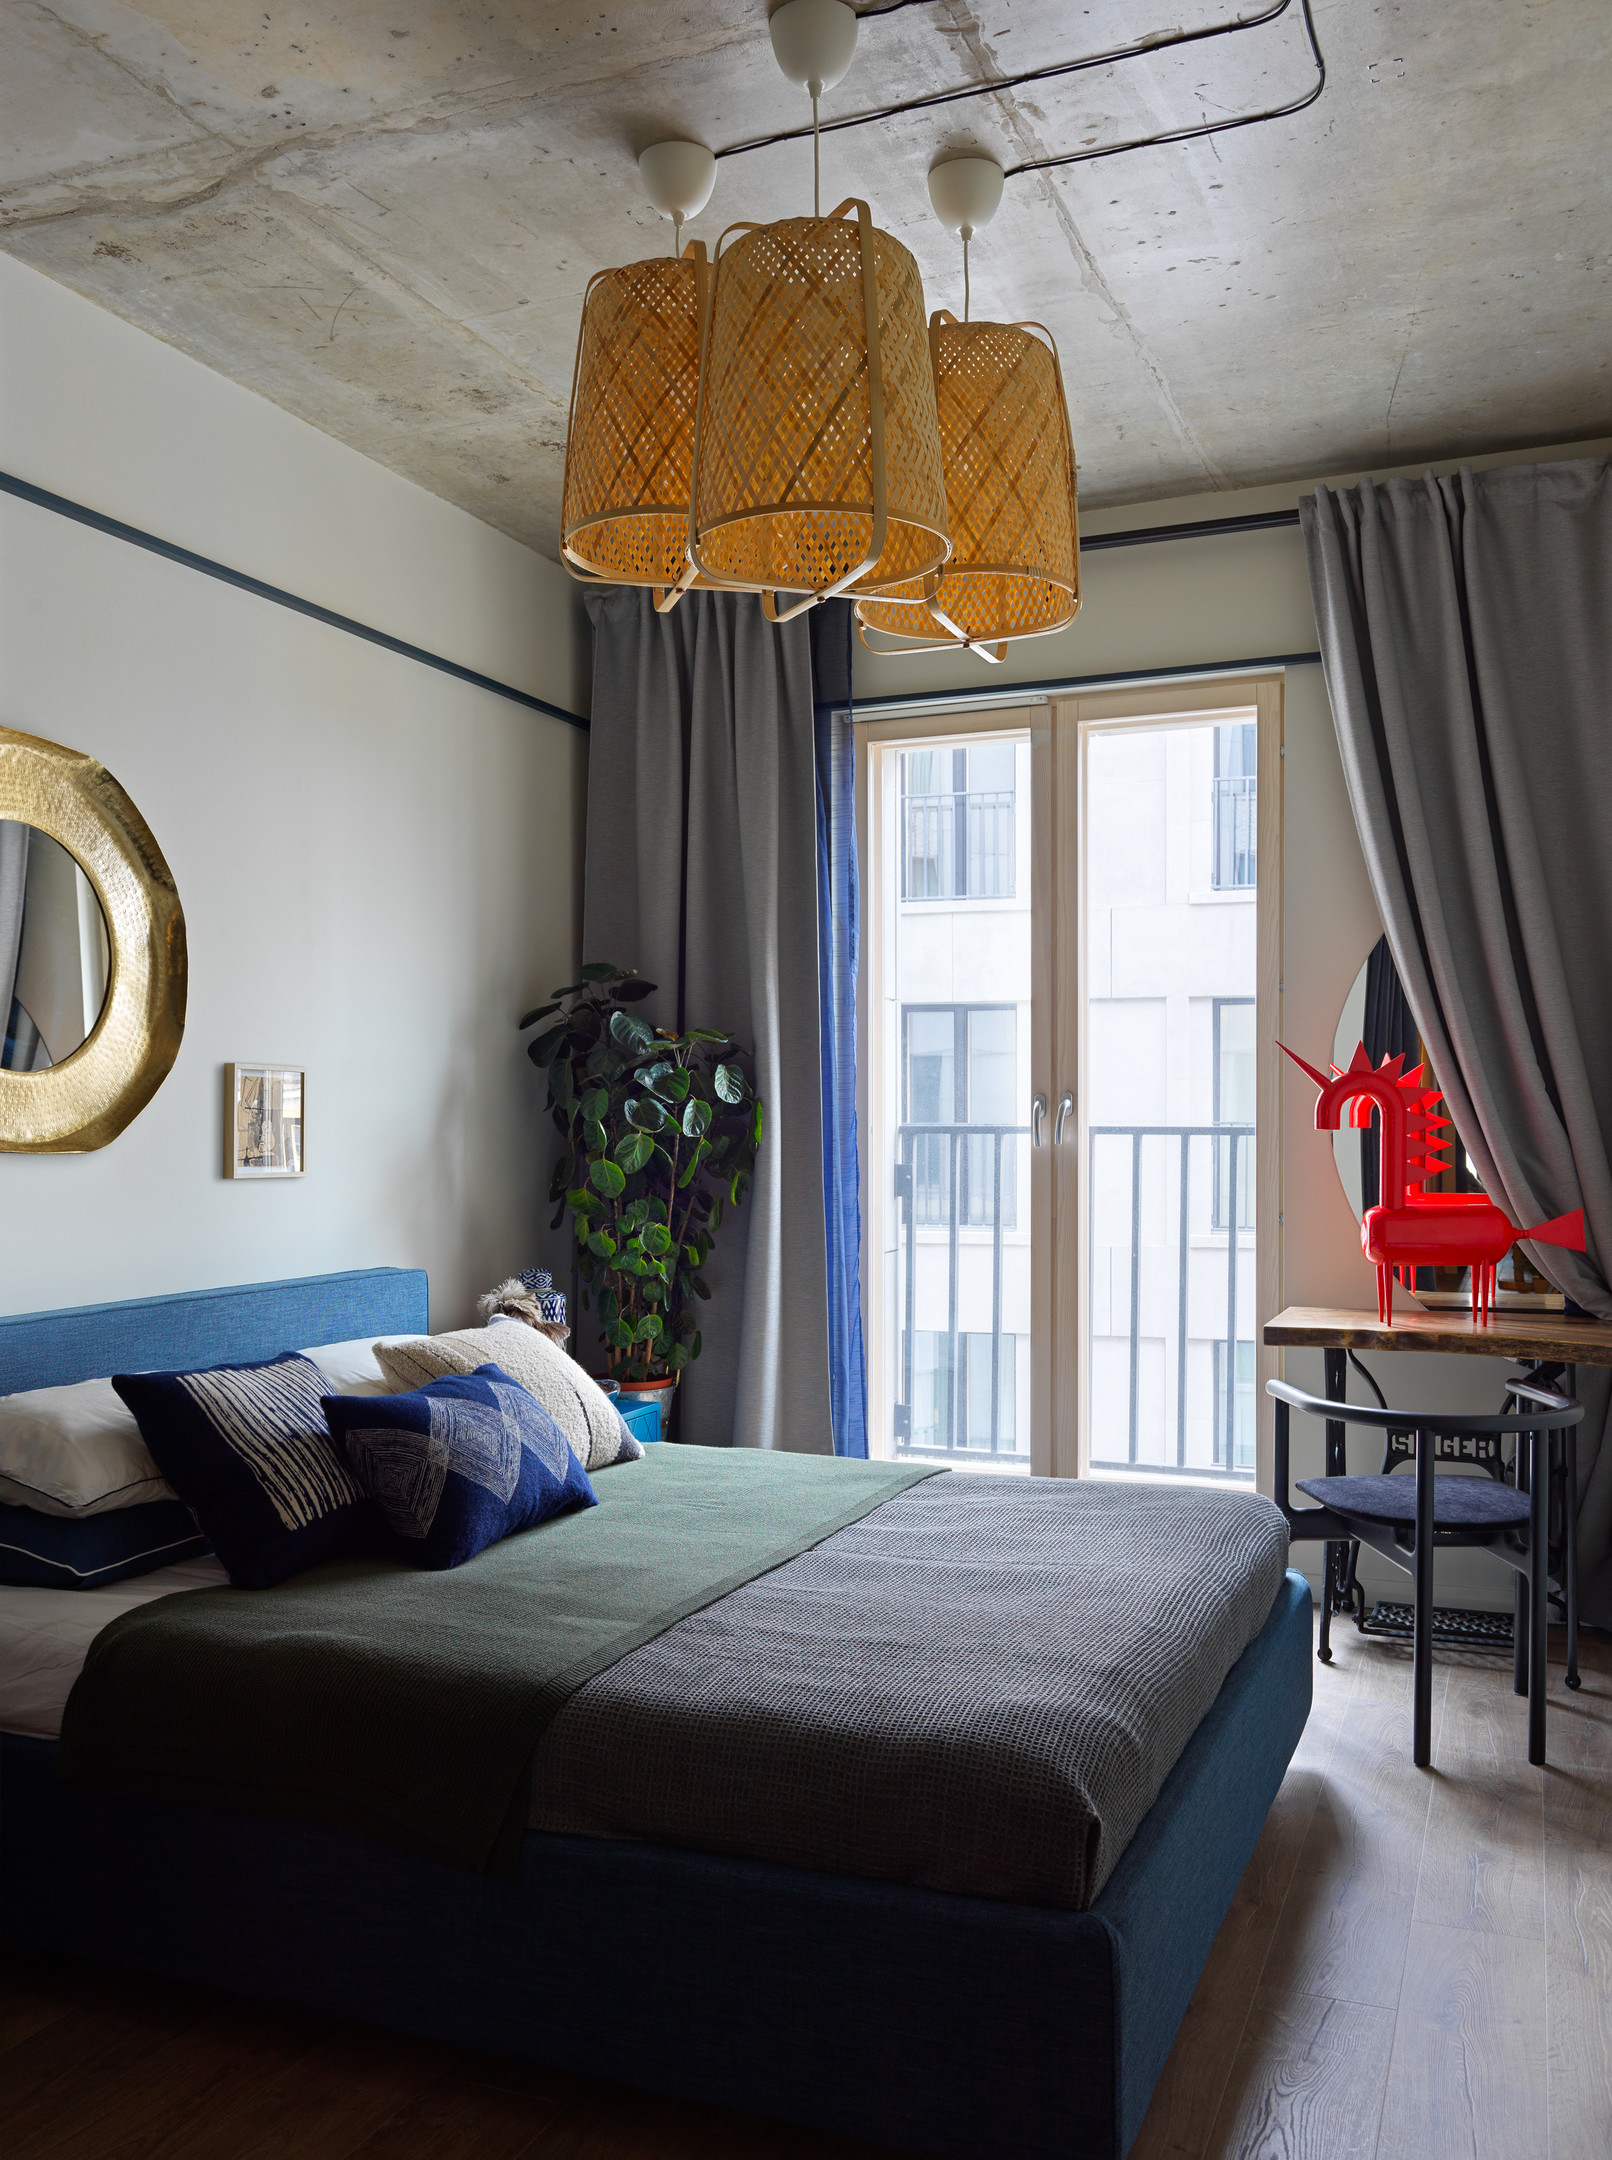 Phòng ngủ dành cho khách có thiết kế nhẹ nhàng hơn về mặt màu sắc. Những gam màu trung tính như xám, xanh lam kết đèn trần mây tre đan mộc mạc và một bộ bàn ghế nhỏ để đọc sách gần cửa sổ.